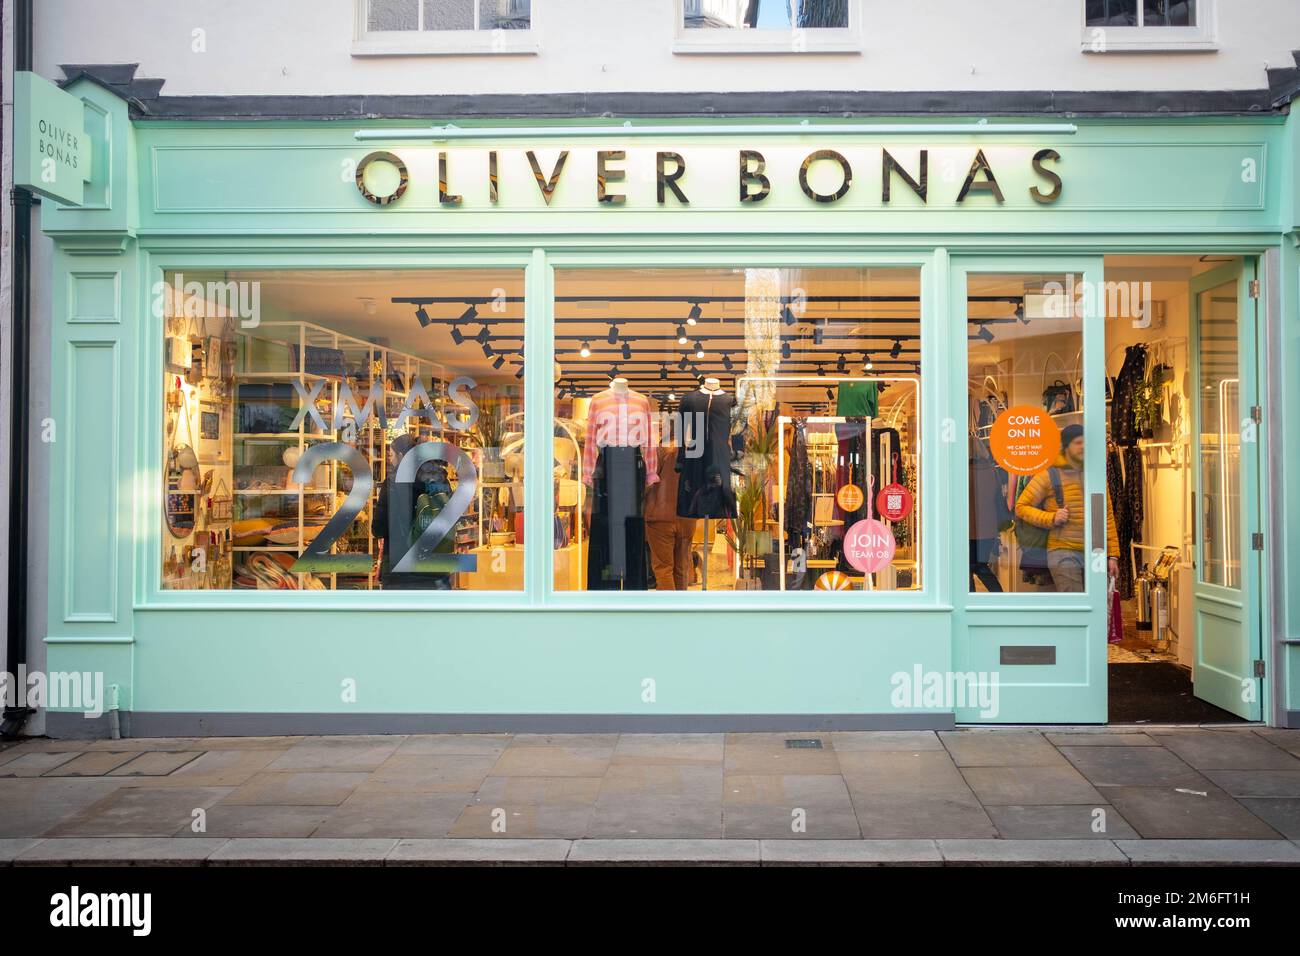 Londres - 2022 décembre : signalétique du magasin Oliver Bonas. Une chaîne de boutiques de mode et de cadeaux britannique Banque D'Images